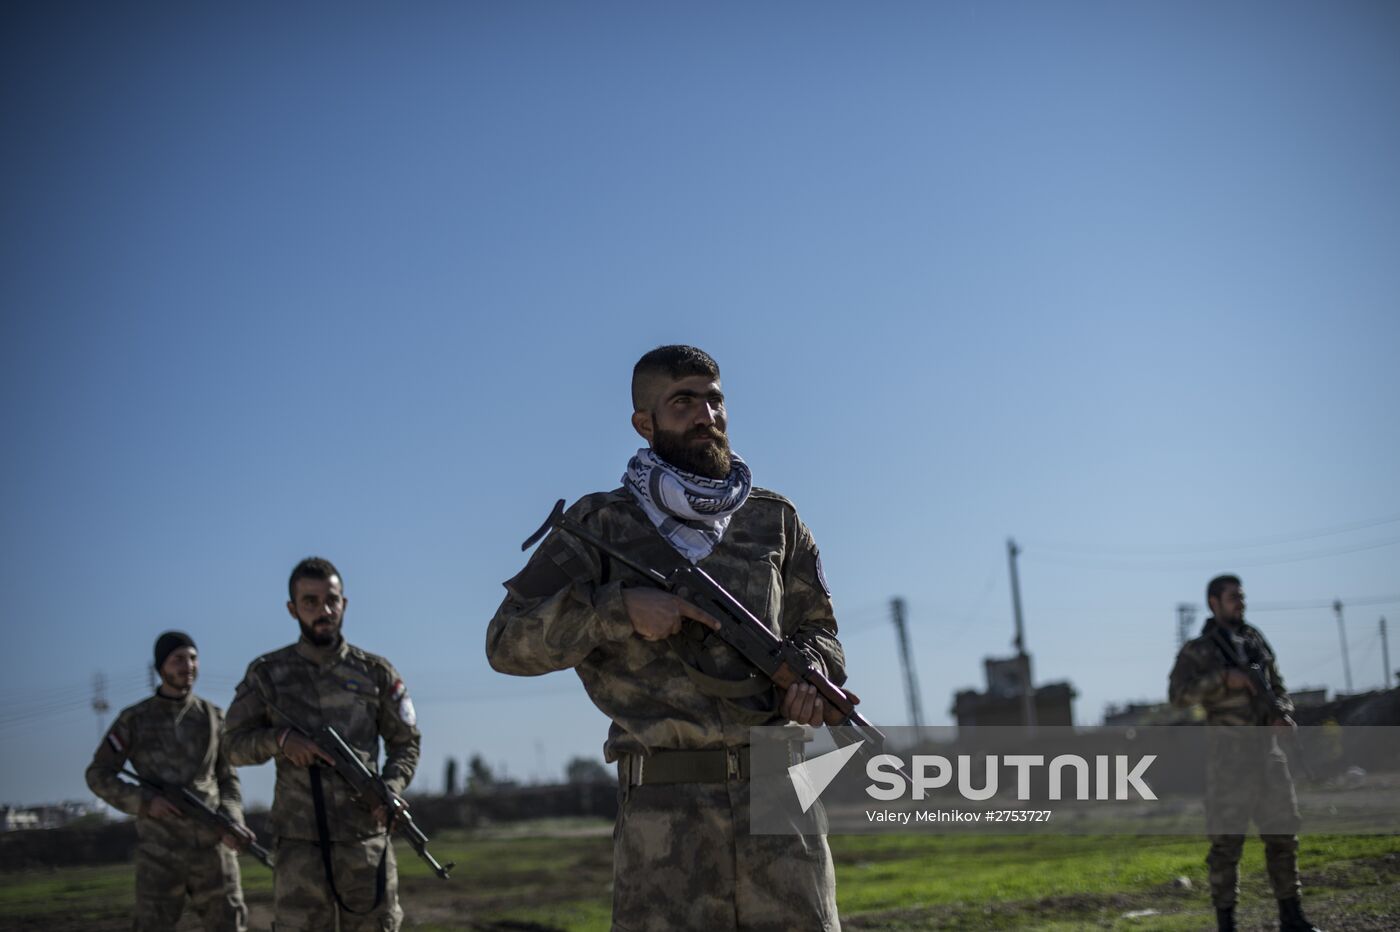 Assyrian 'Sotoro' self-defense forces in Al-Qamishli city